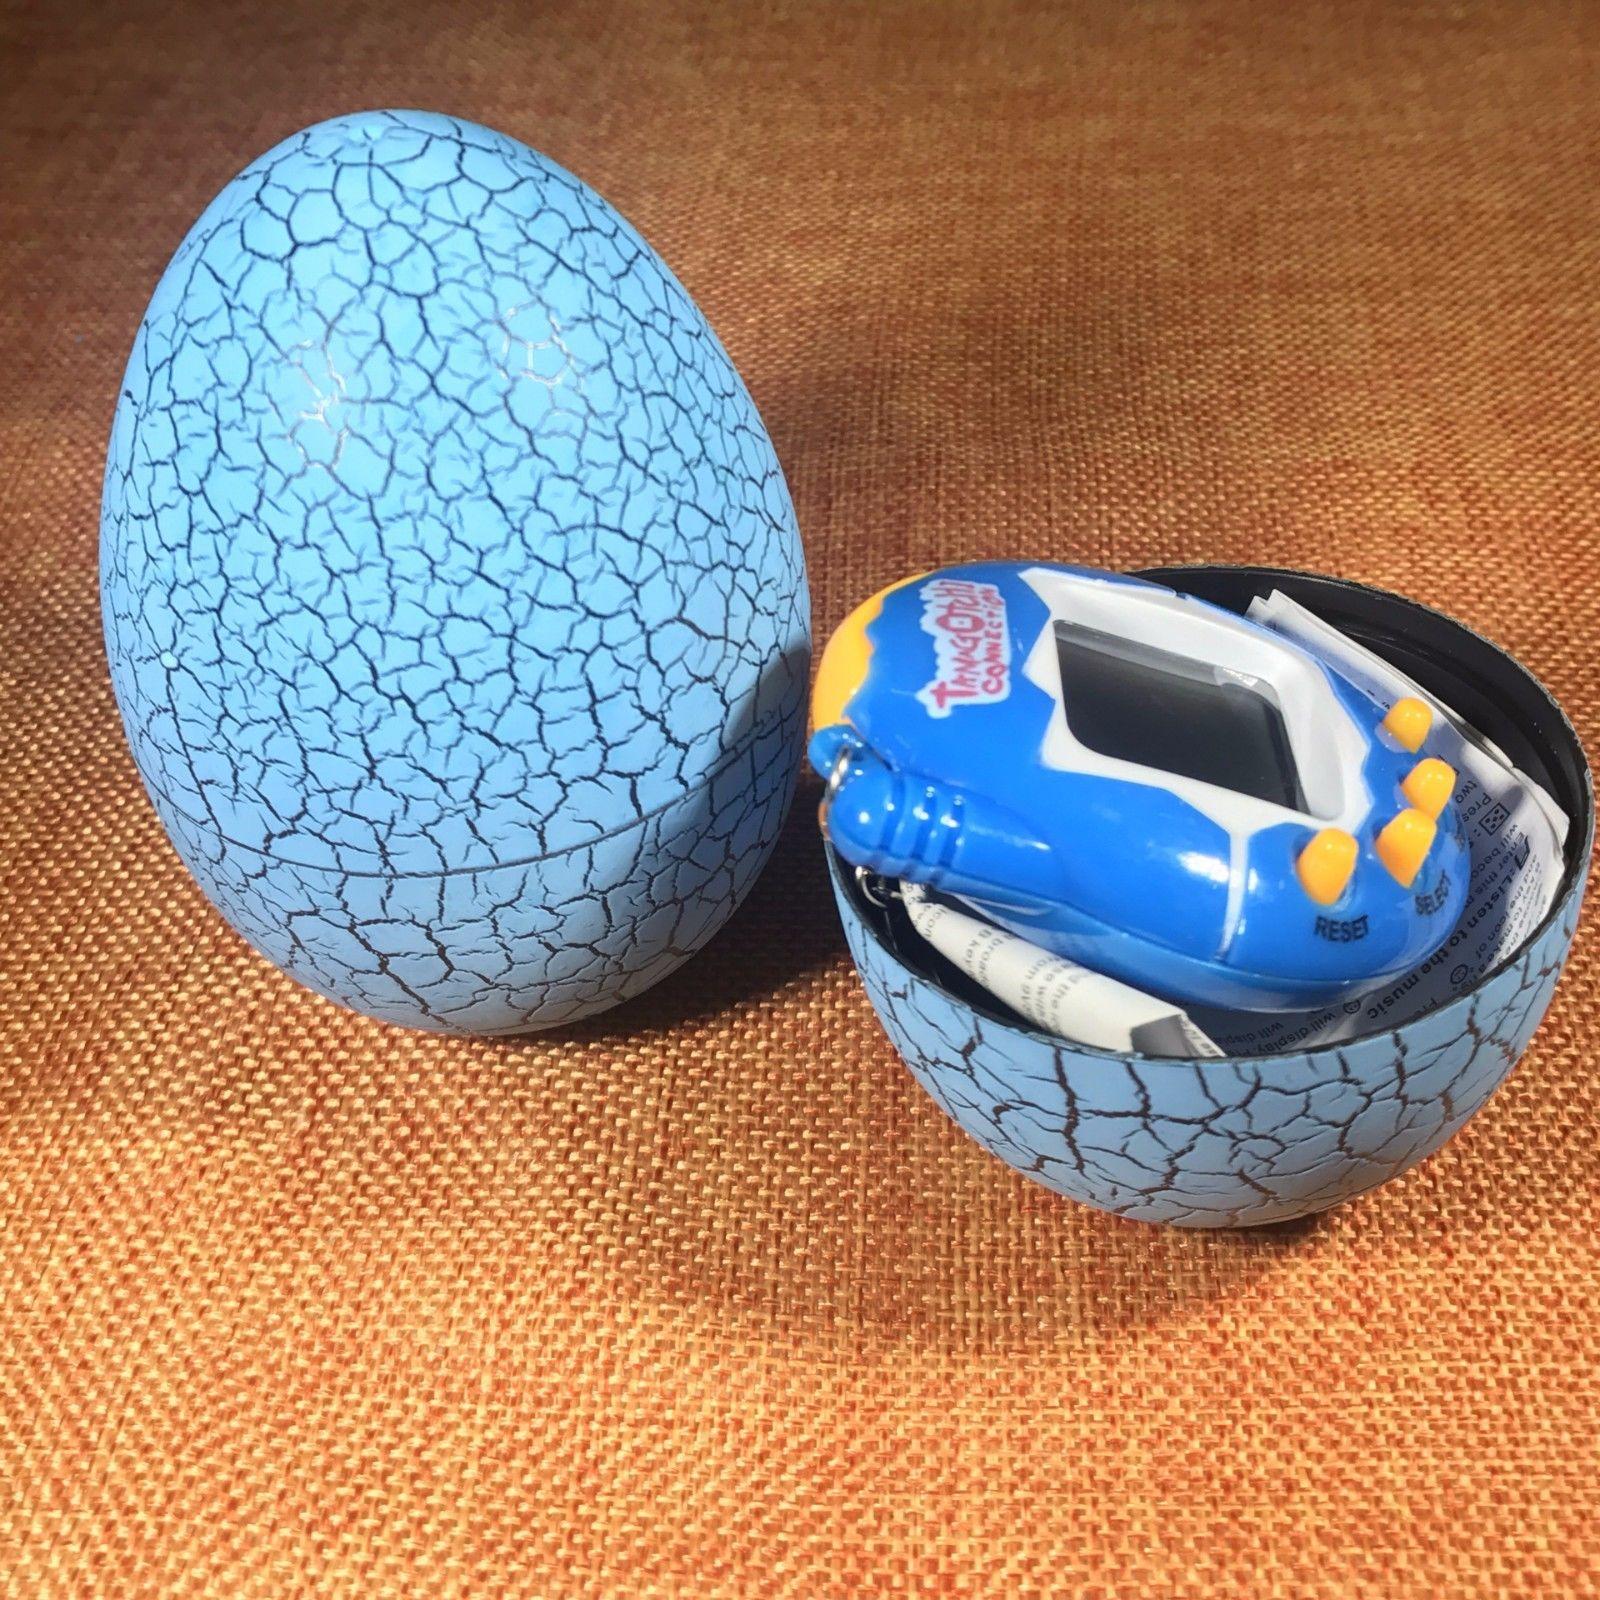 Игрушка электронный питомец Тамагочи в Яйце Динозавра UFT Eggshell Game Blue